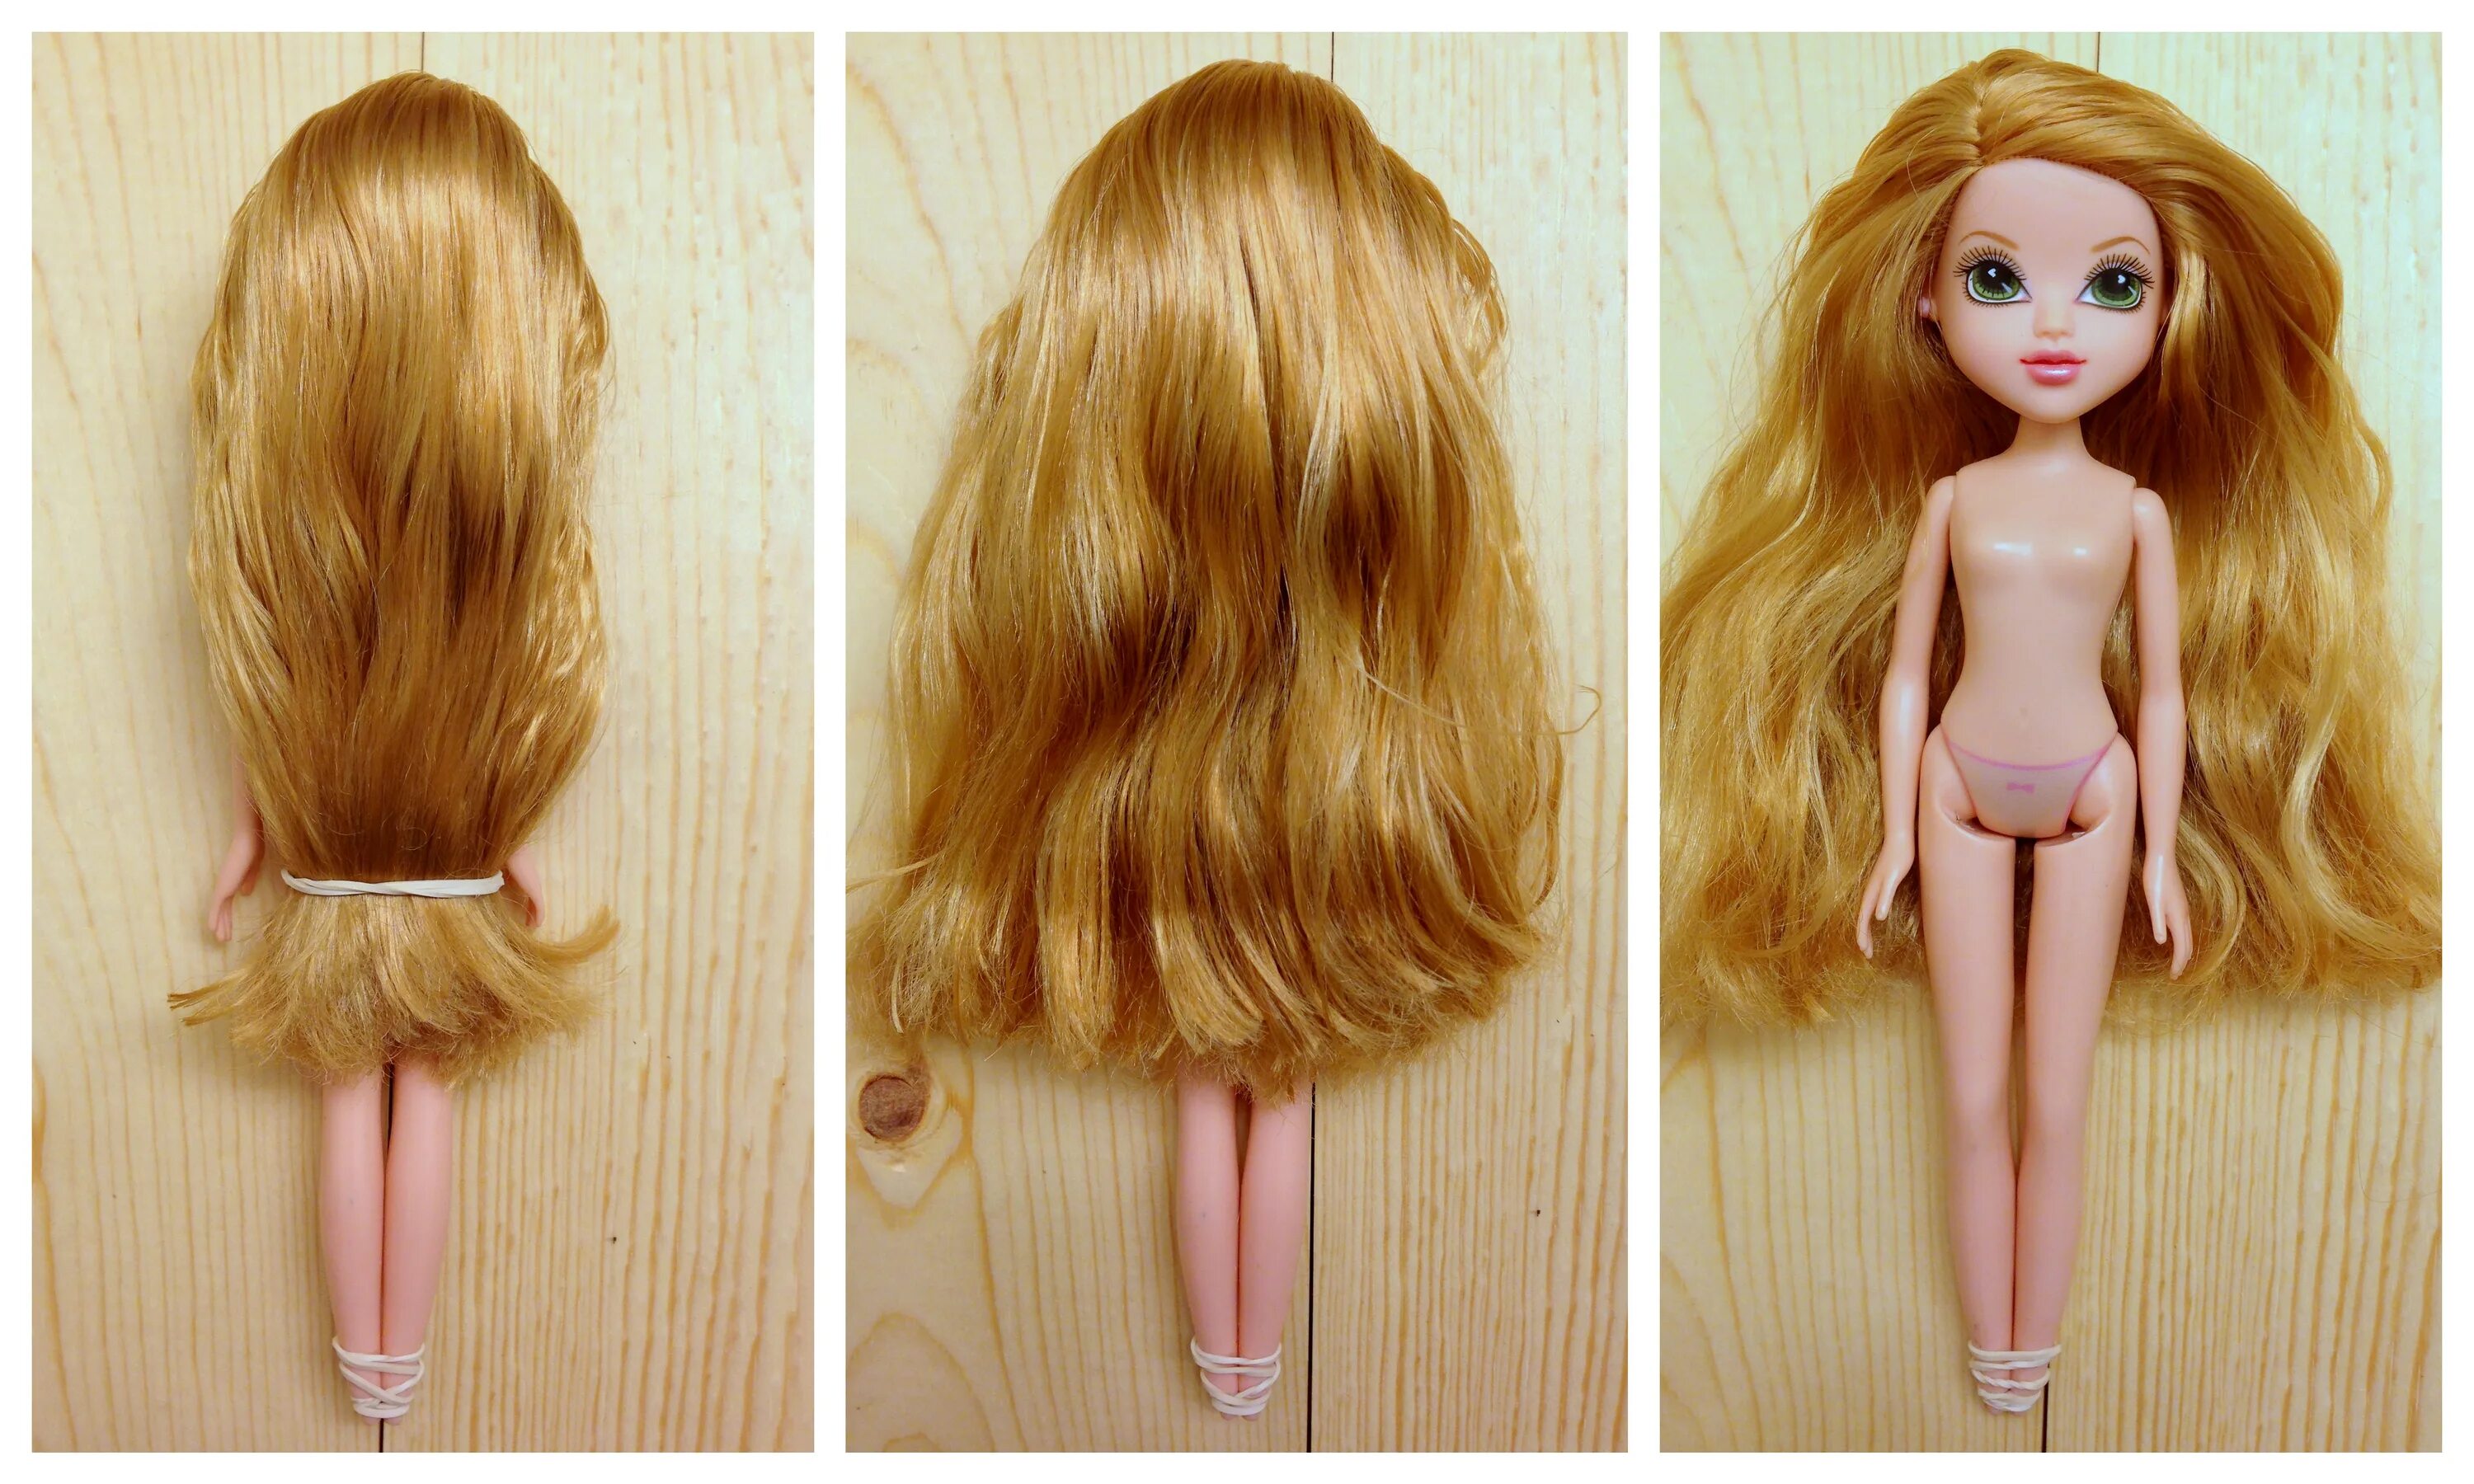 Жирные волосы у куклы. Кукла hair. Большую куклу с волосами. Шелковистые волосы у куклы. Какие волосы были у куклы